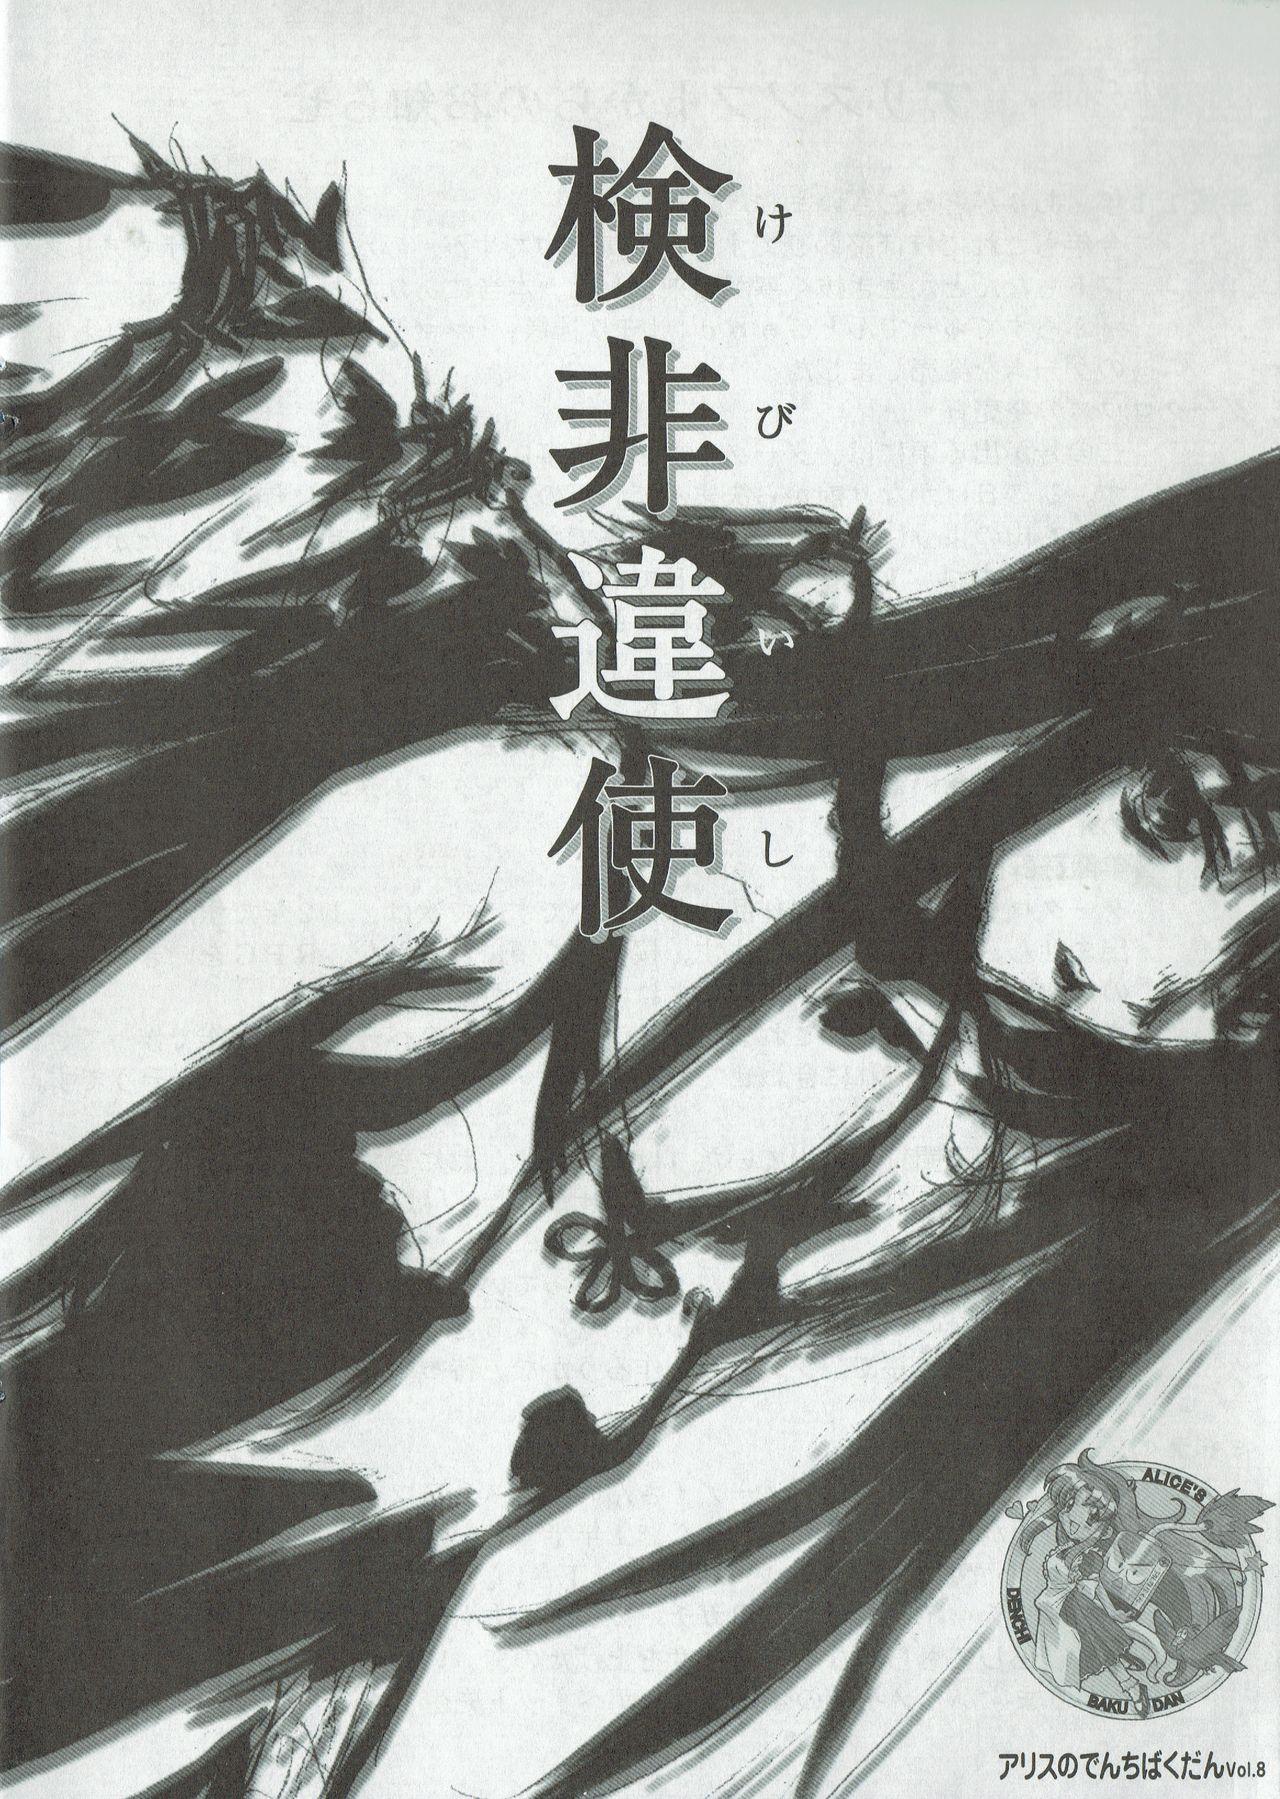 Arisu no Denchi Bakudan Vol. 08 0